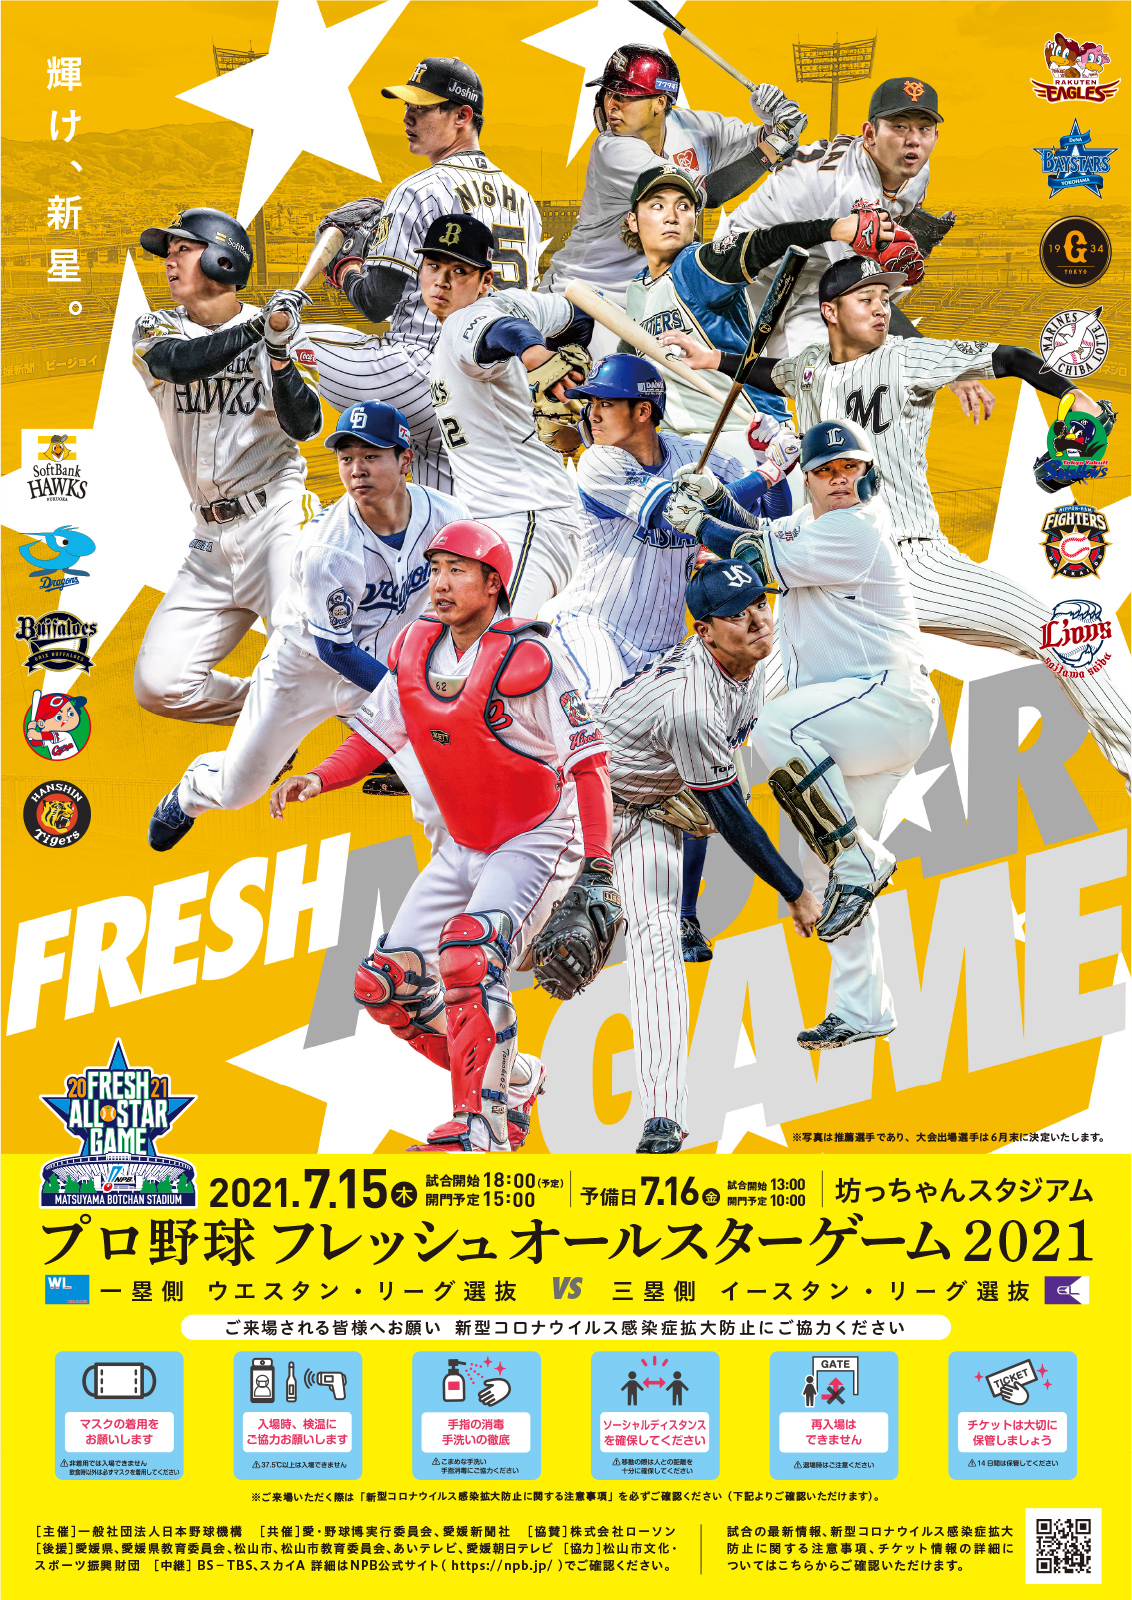 プロ野球フレッシュオールスターゲーム2021』の出場メンバーが発表され